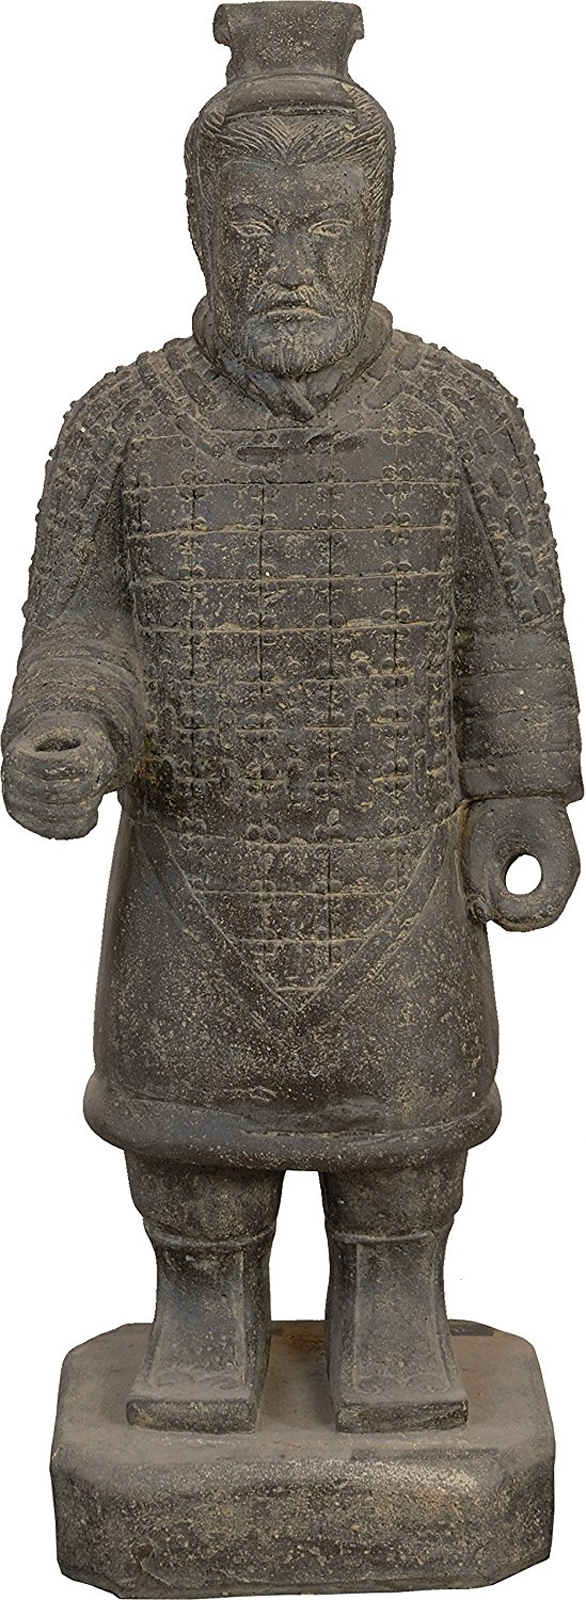 Steinfigur chinesischer Krieger